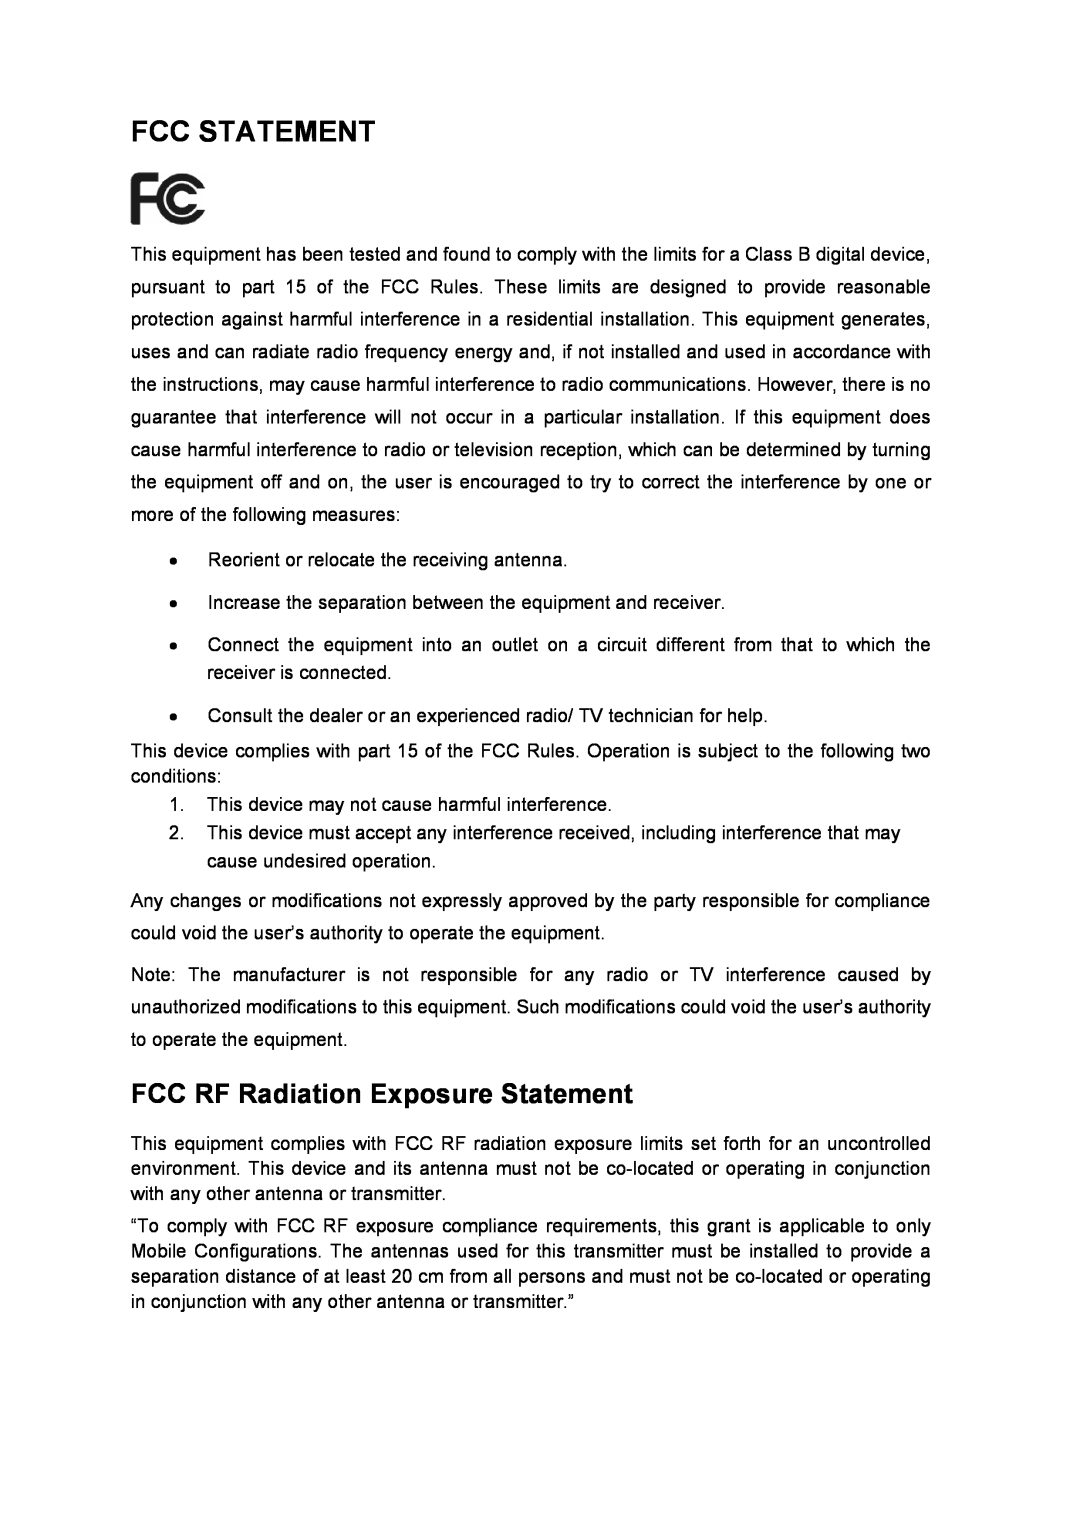 TP-Link TL-WN727N manual Fcc Statement, FCC RF Radiation Exposure Statement 